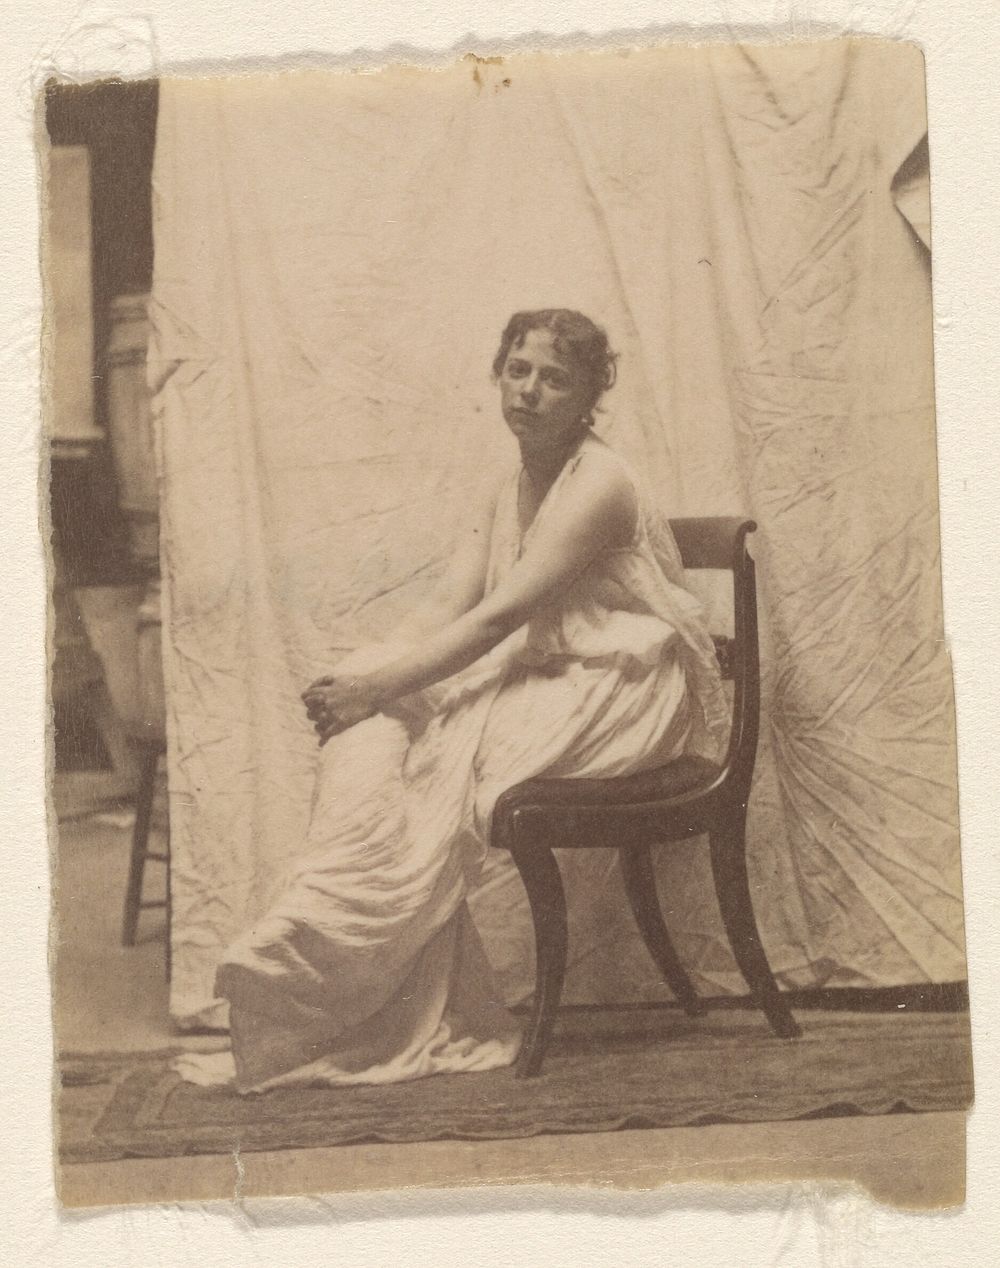 Weda Cook in Classical Costume in Eakins's Chestnut Street Studio by Thomas Eakins